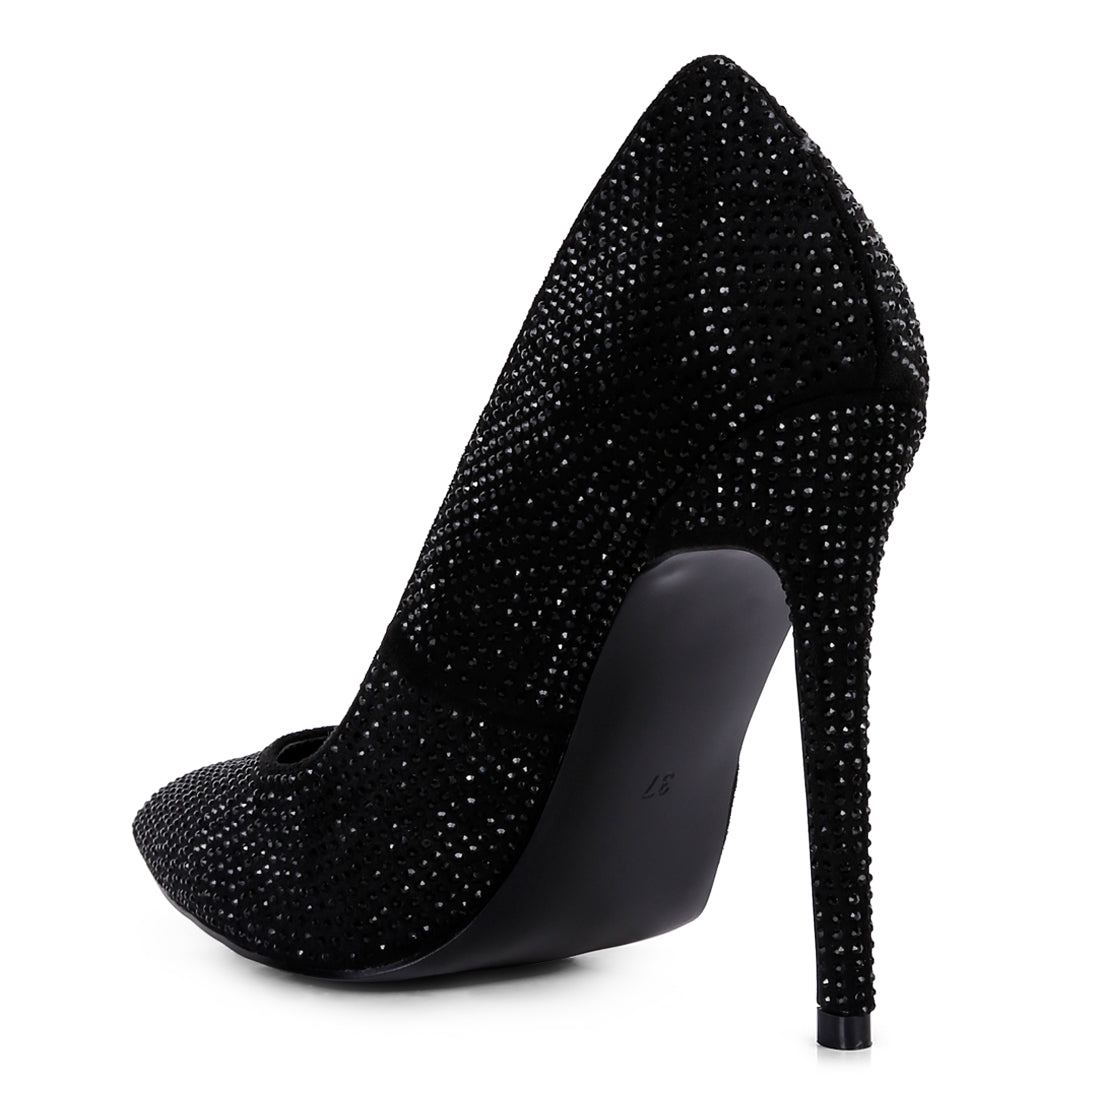 diamante high heeled pumps#color_black